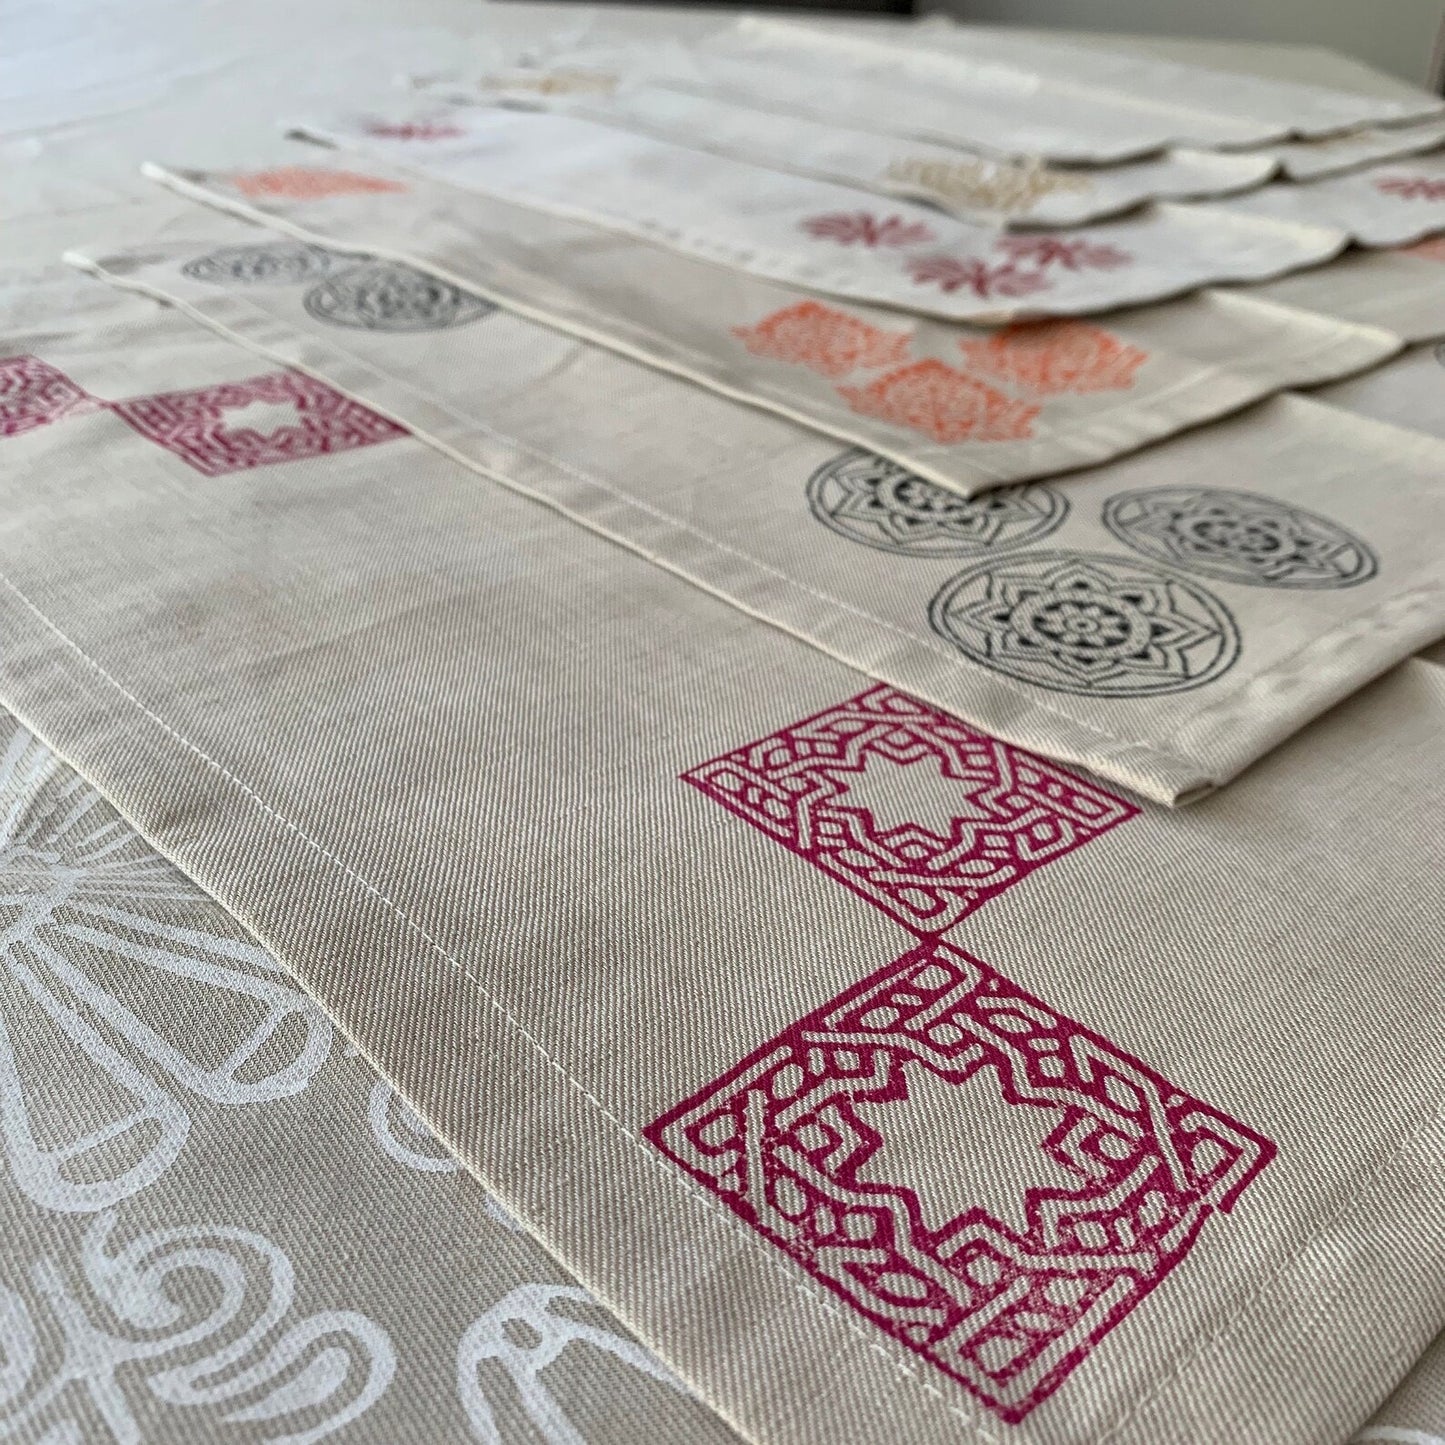 Handmade Blockprinted Linen Napkins in Beige